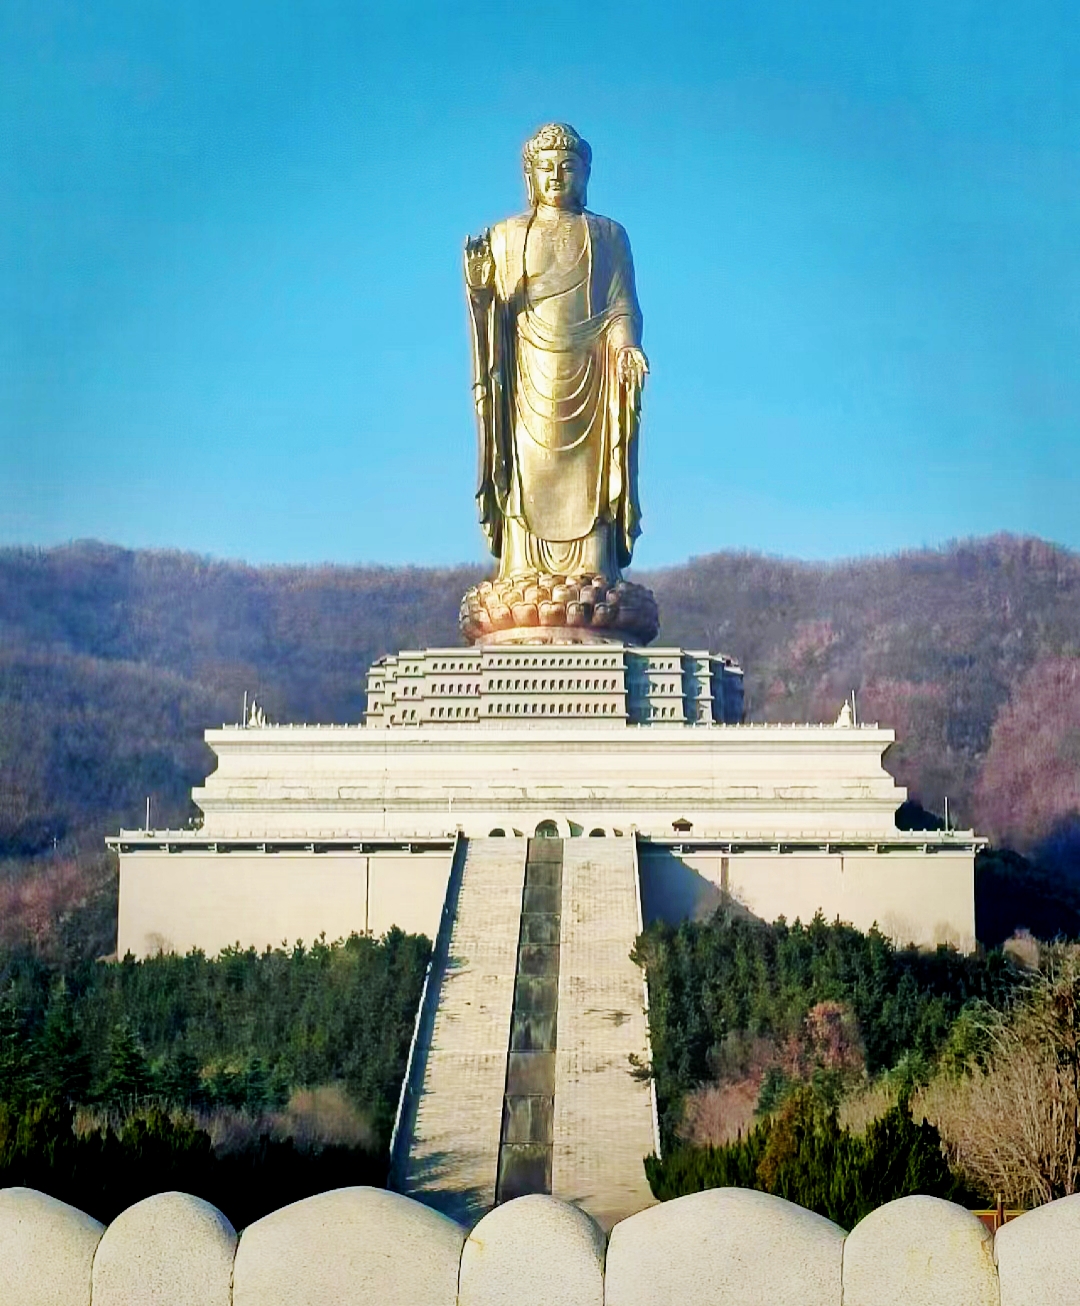 探索平顶山佛泉寺:世界最高佛像与世外桃源的完美交融